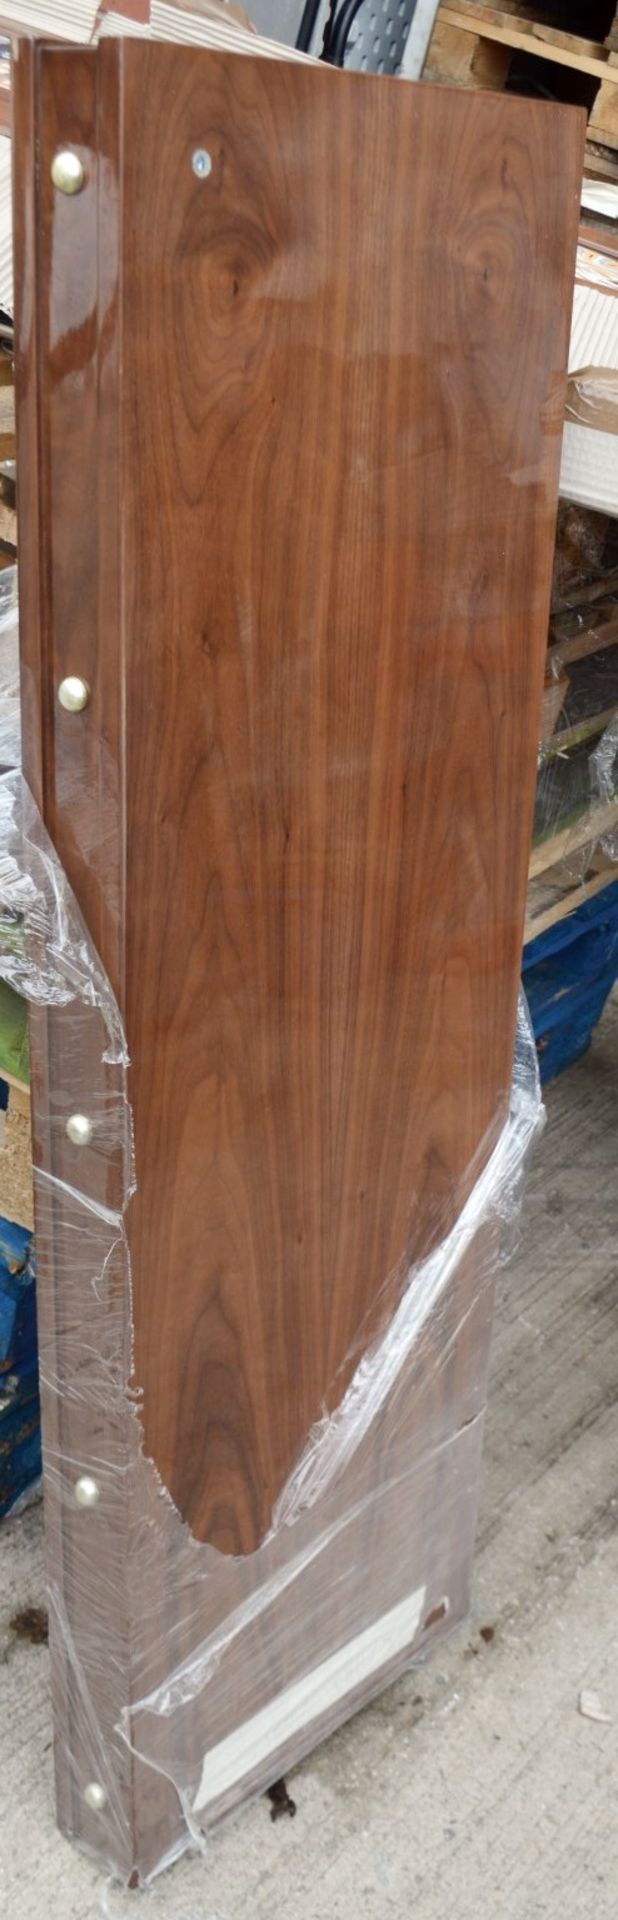 1 x JUSTIN VAN BREDA 'Grace' 2.5 Metre 4-Door Dresser With Inlaid Artwork - Original Price £6,359 - Image 11 of 19